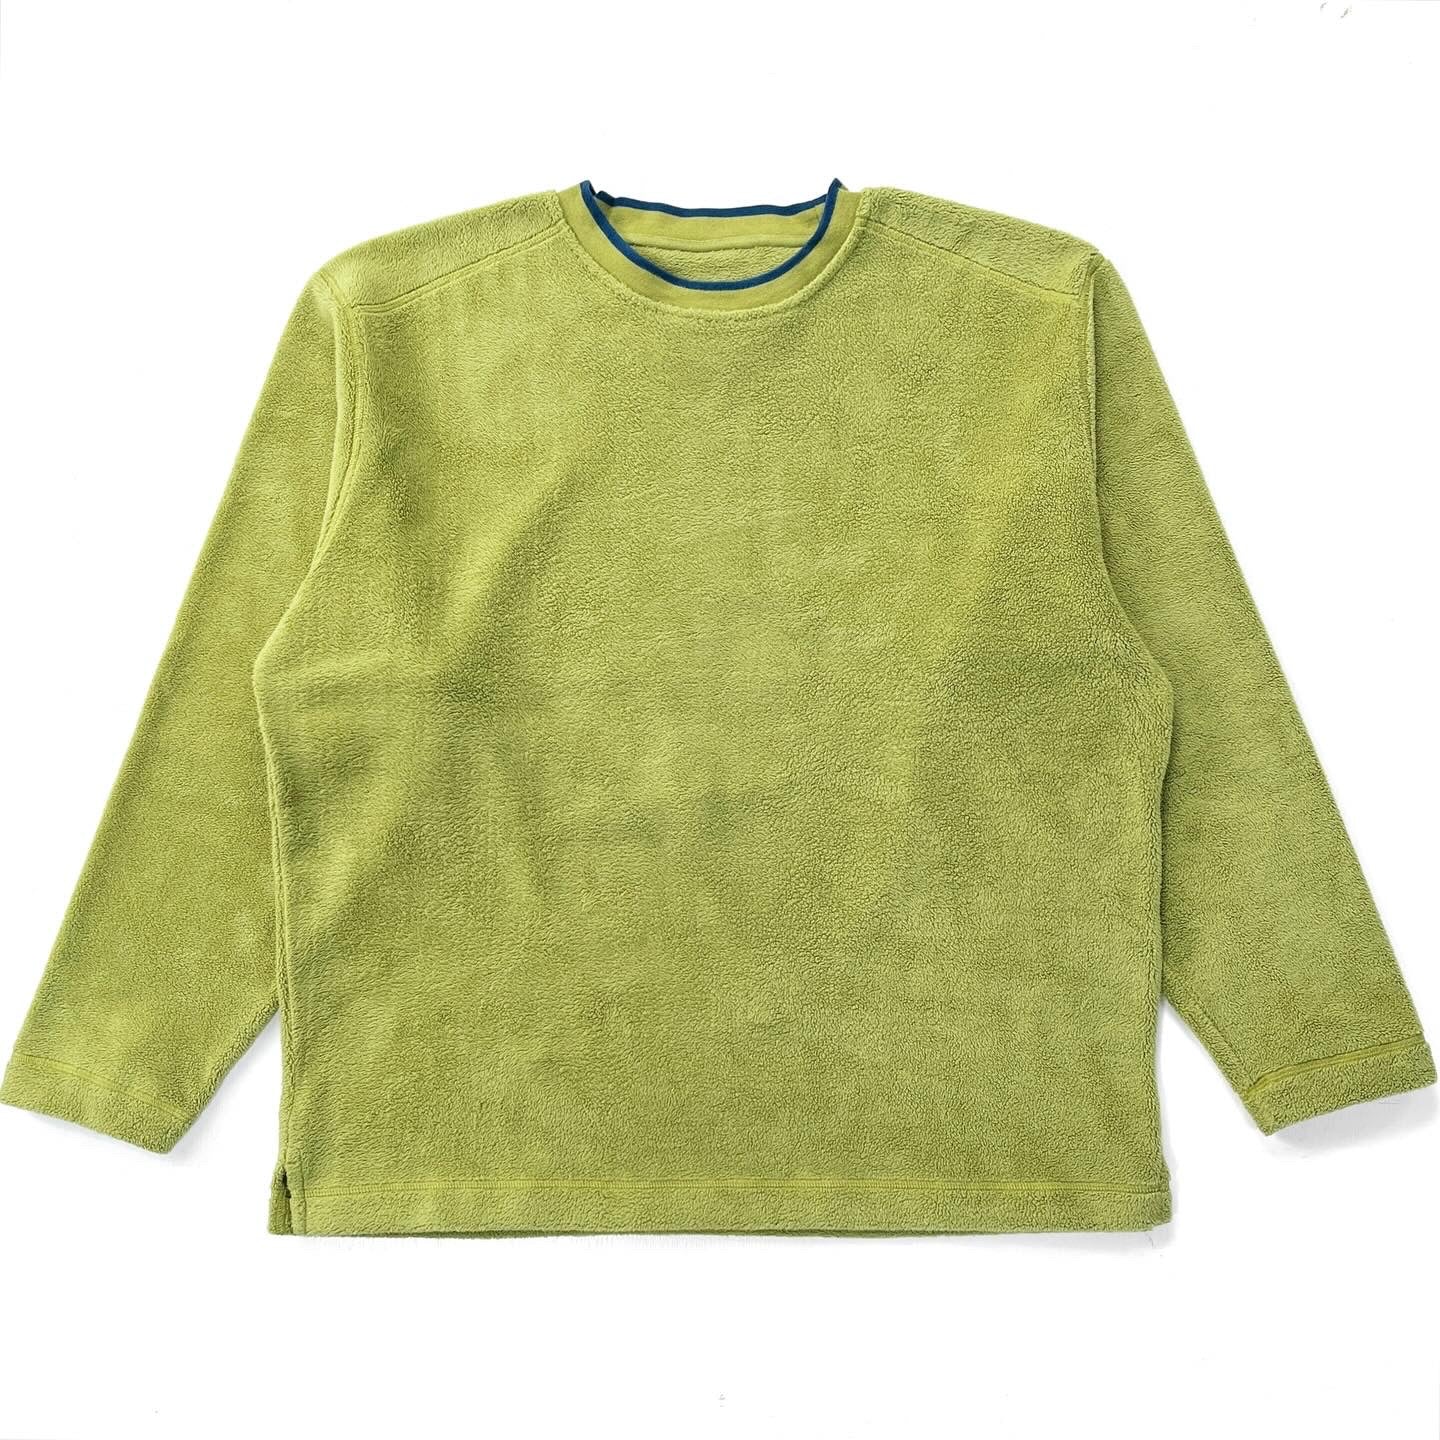 2004 Patagonia Rhythm High-Pile Fleece Sweatshirt, Sprout (L/XL)